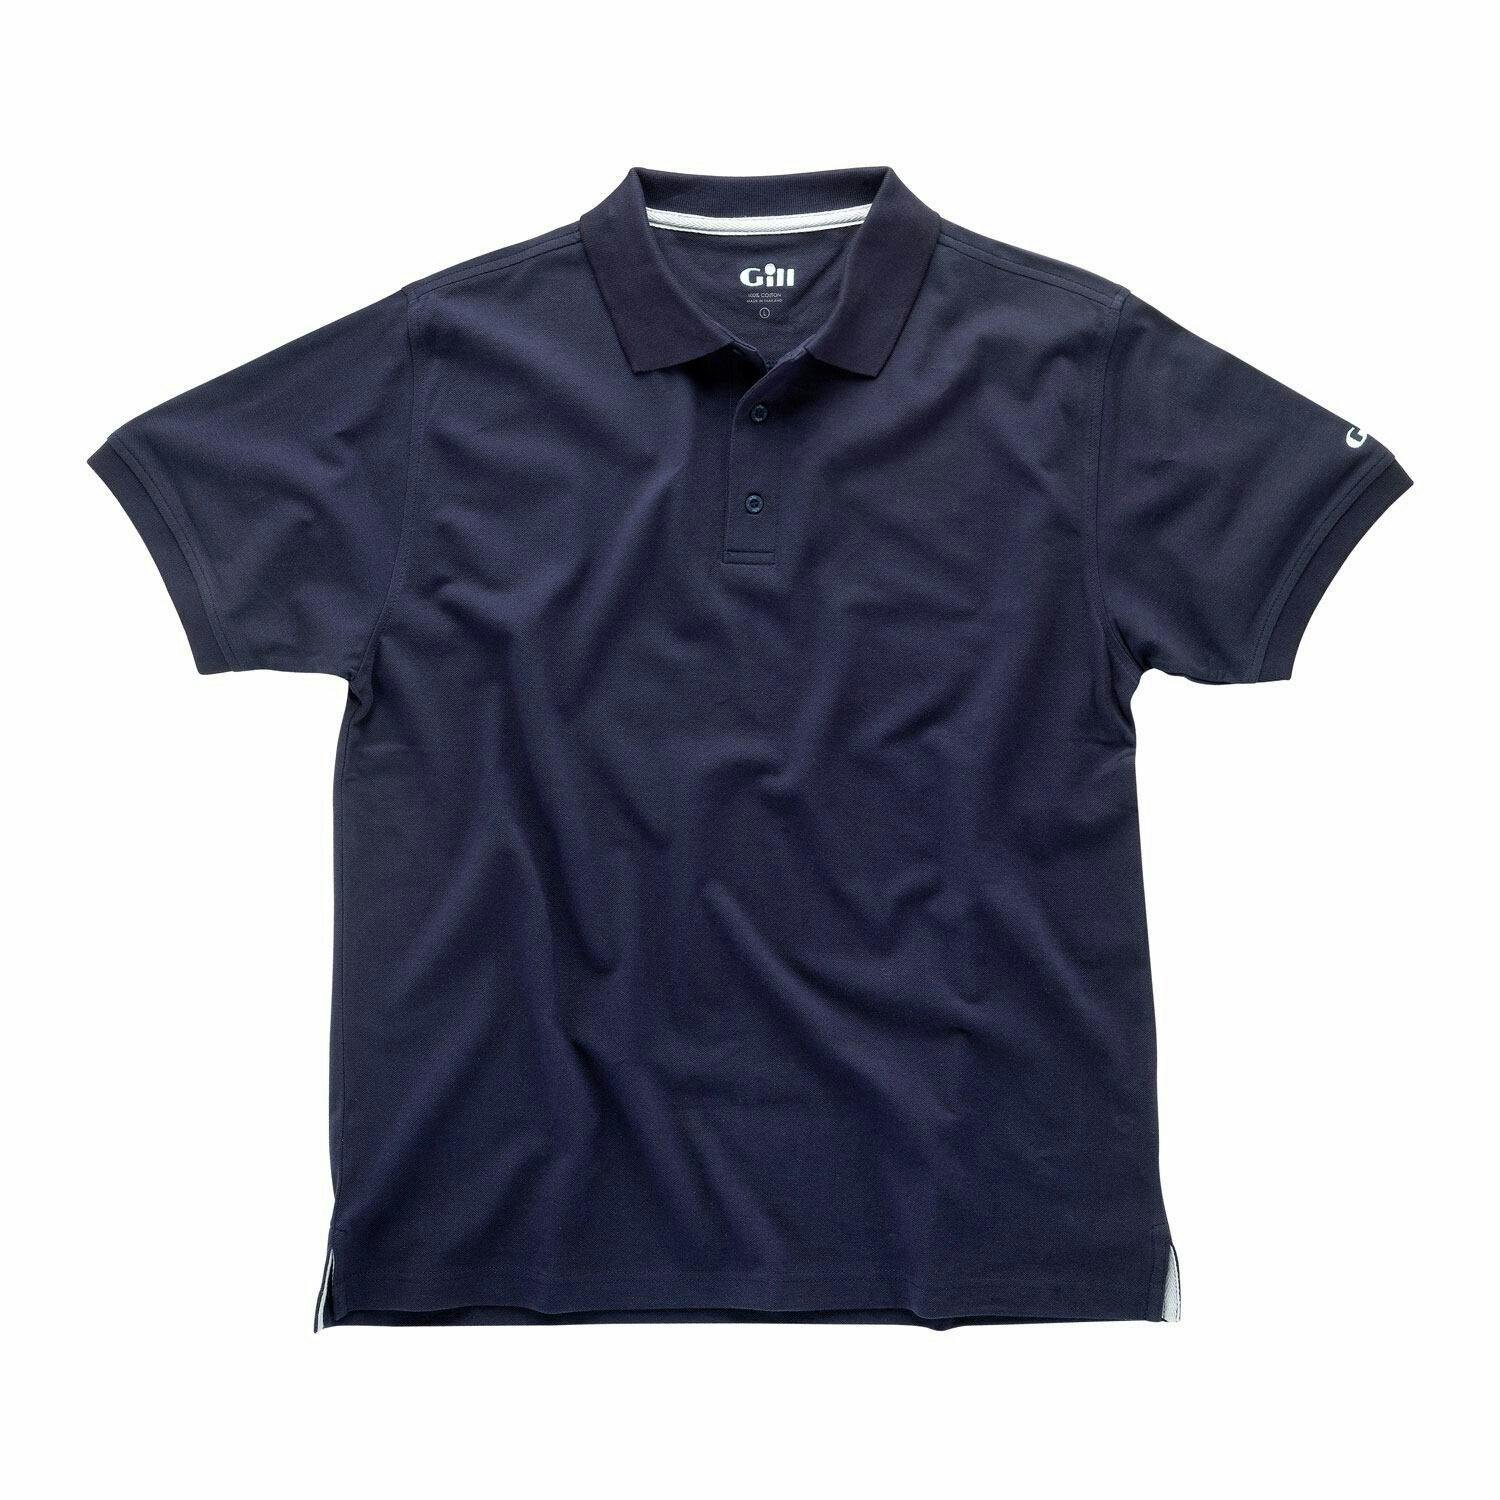 E015 polo shirt Gill navy str m